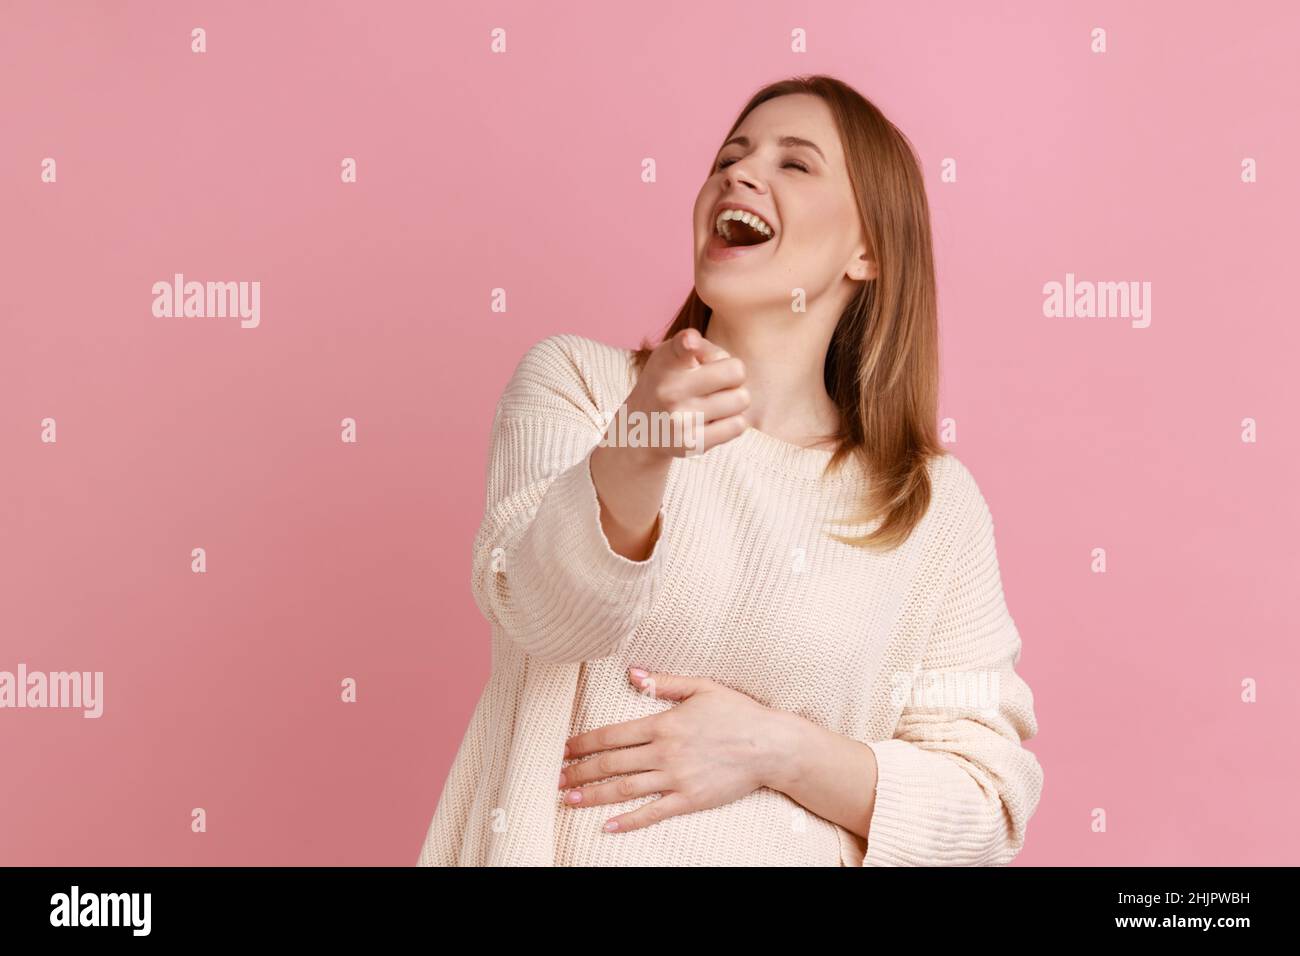 Porträt einer optimistischen blonden Frau, die laut mit dem Zeigefinger lacht, sich über Sie lustig macht und die Kamera anschaut, Witz, weißen Pullover trägt. Innenaufnahme des Studios isoliert auf rosa Hintergrund. Stockfoto